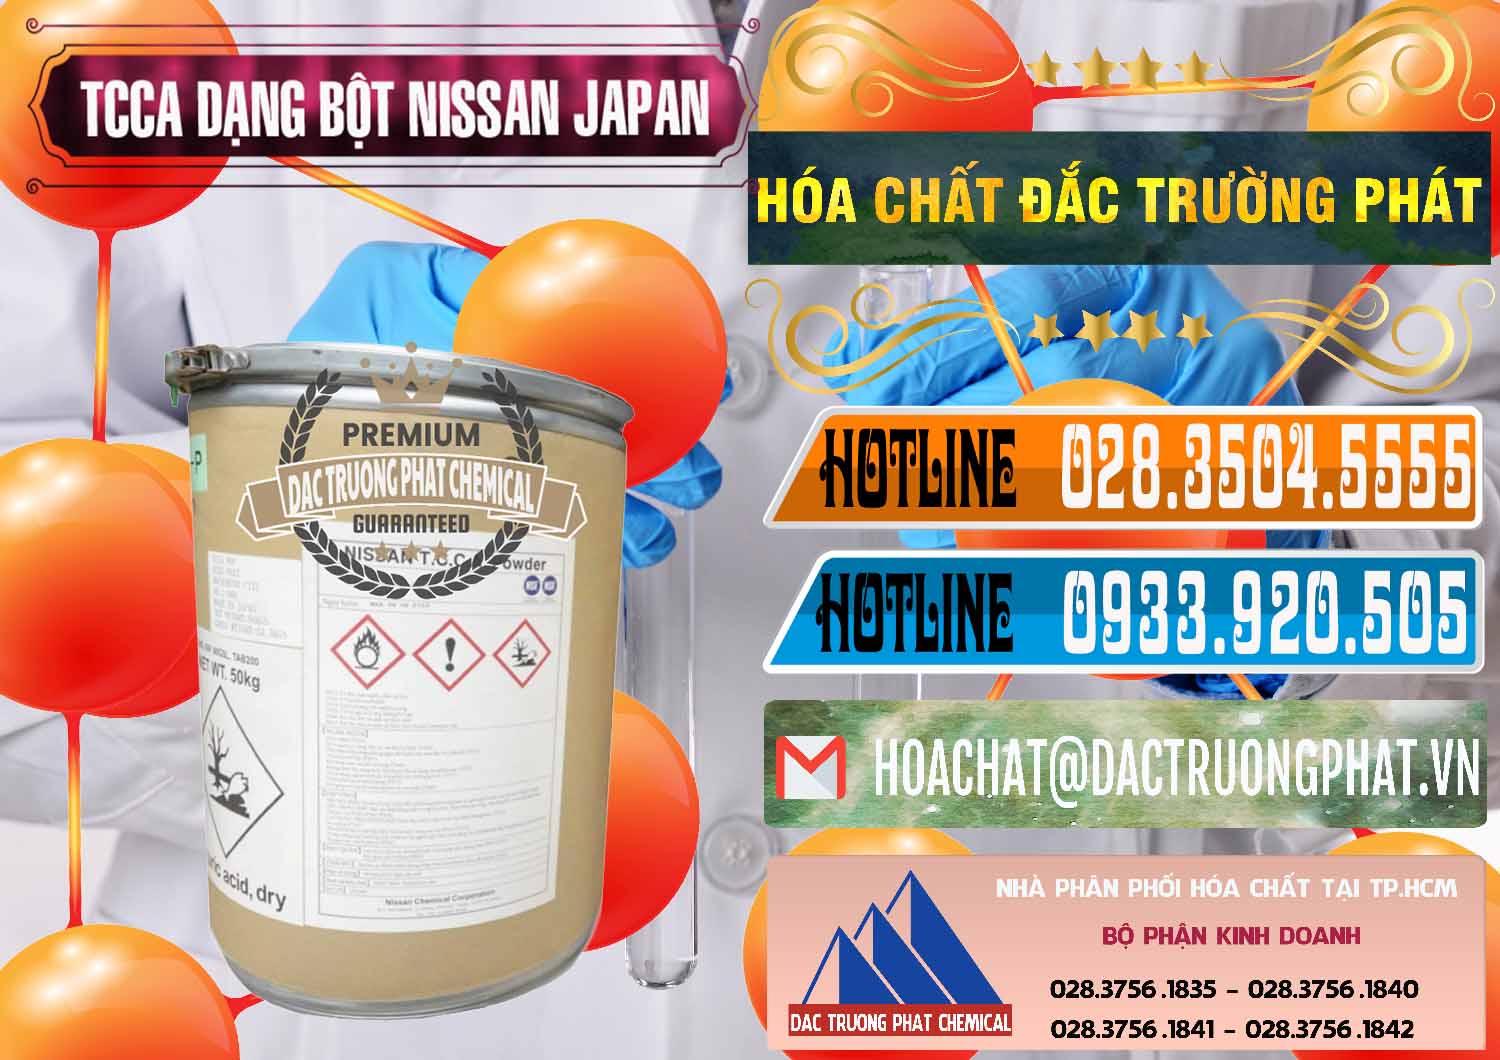 Đơn vị chuyên cung ứng _ bán TCCA - Acid Trichloroisocyanuric 90% Dạng Bột Nissan Nhật Bản Japan - 0375 - Cty chuyên cung cấp & nhập khẩu hóa chất tại TP.HCM - stmp.net